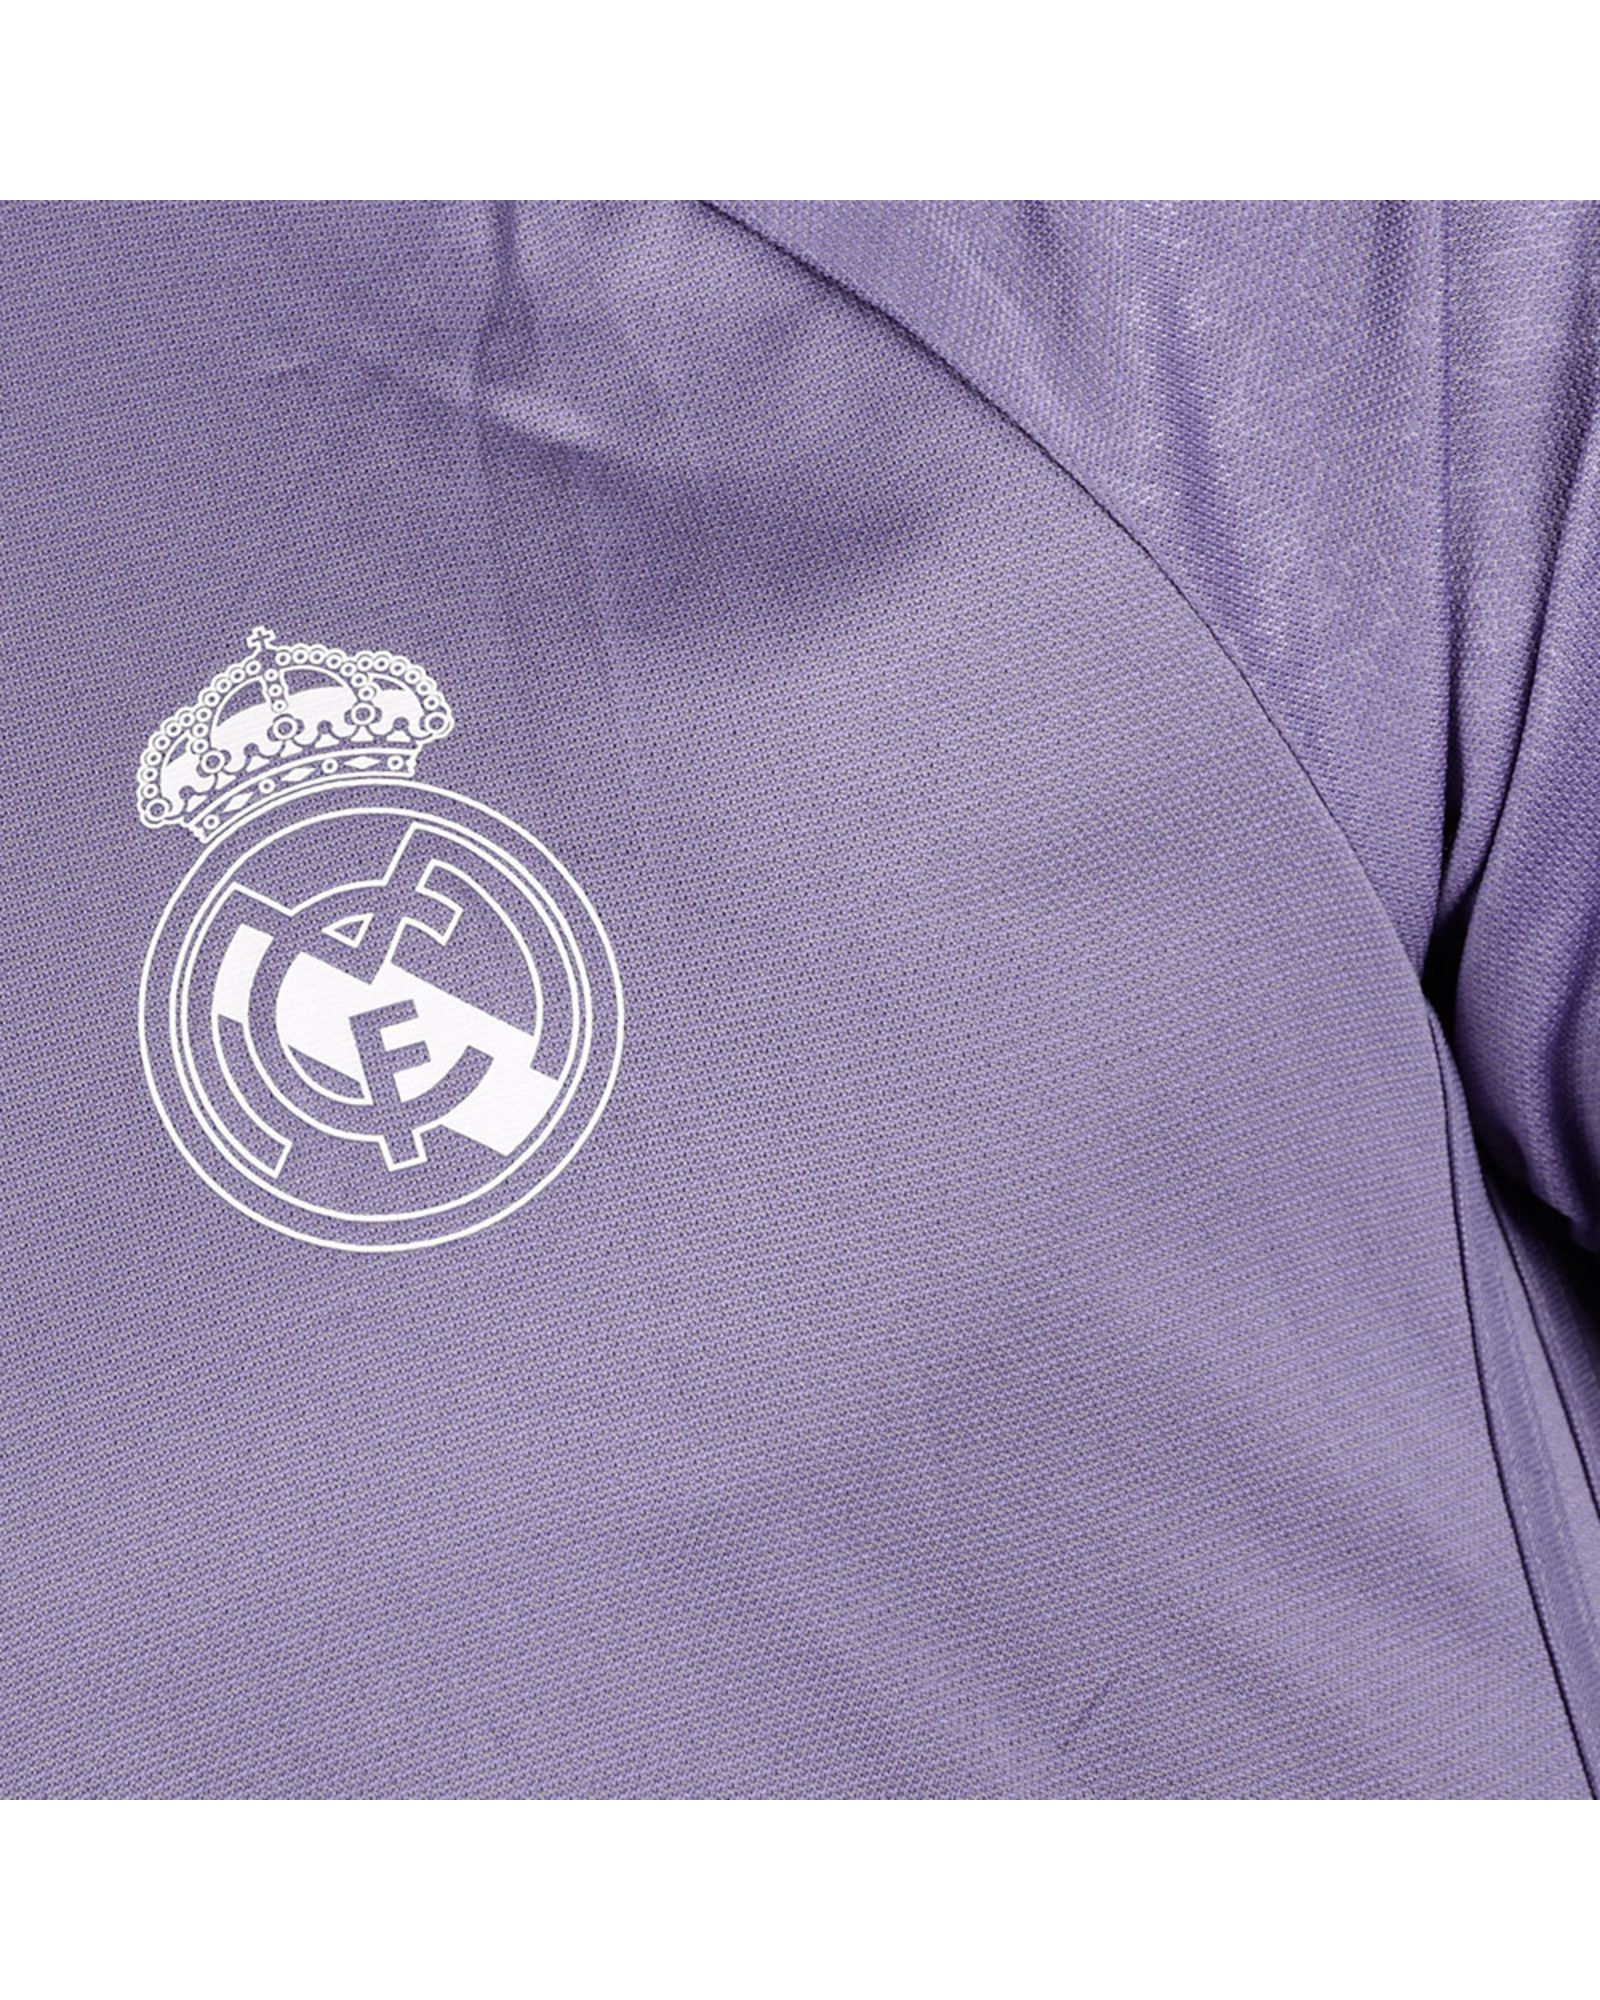 Camiseta de Training Real Madrid 2016/2017 UCL Violeta - Fútbol Factory